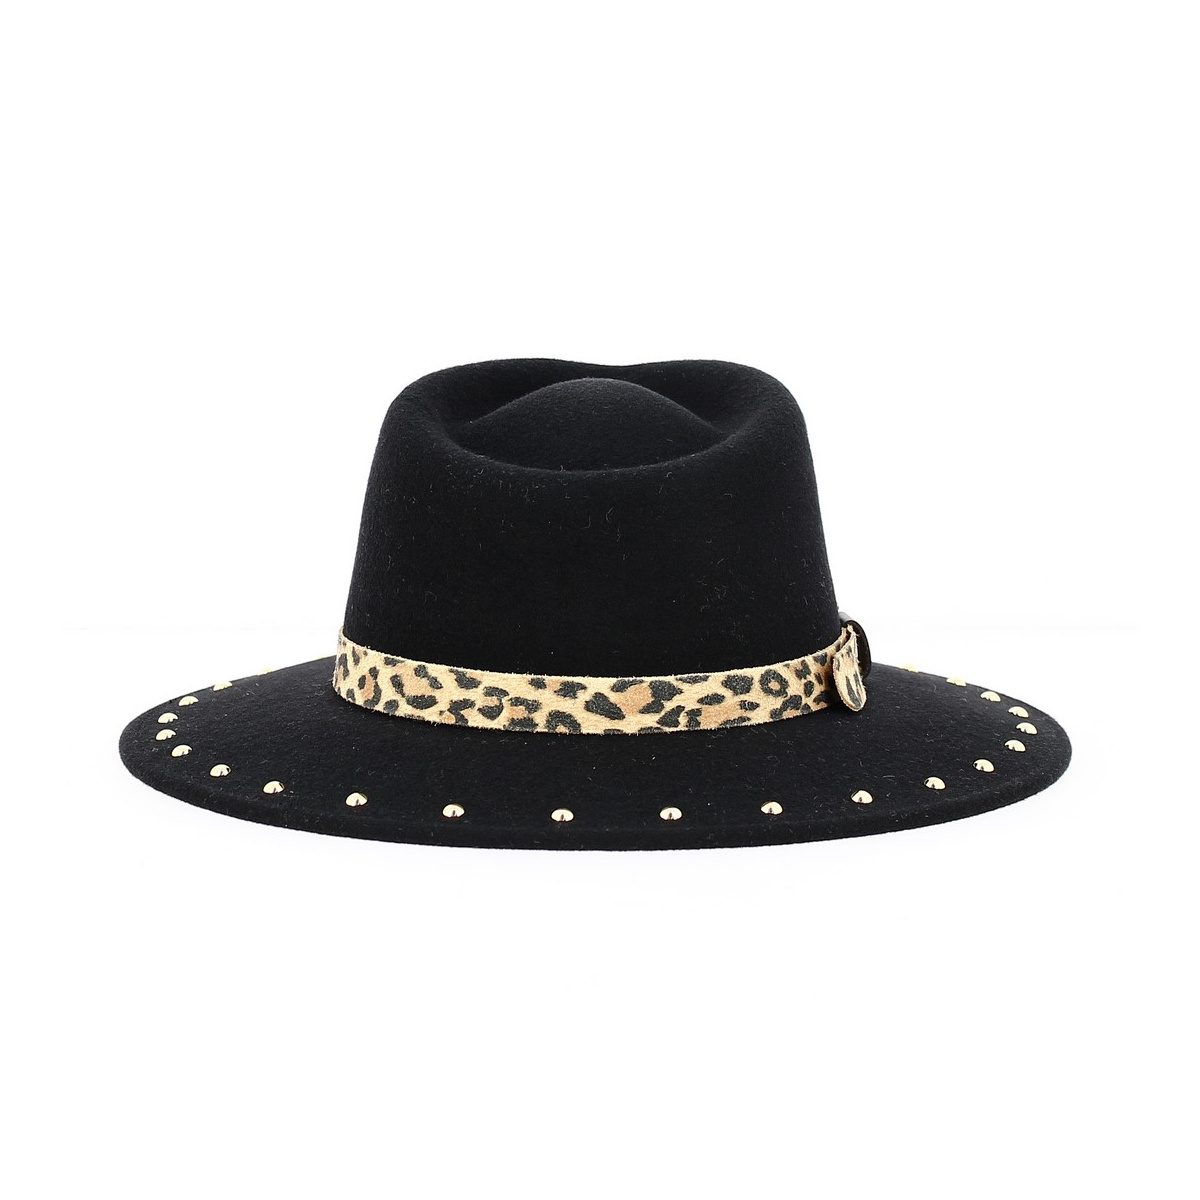 Chapeau / bonnet en laine Louis Vuitton Noir taille 54 cm en Laine -  28540028